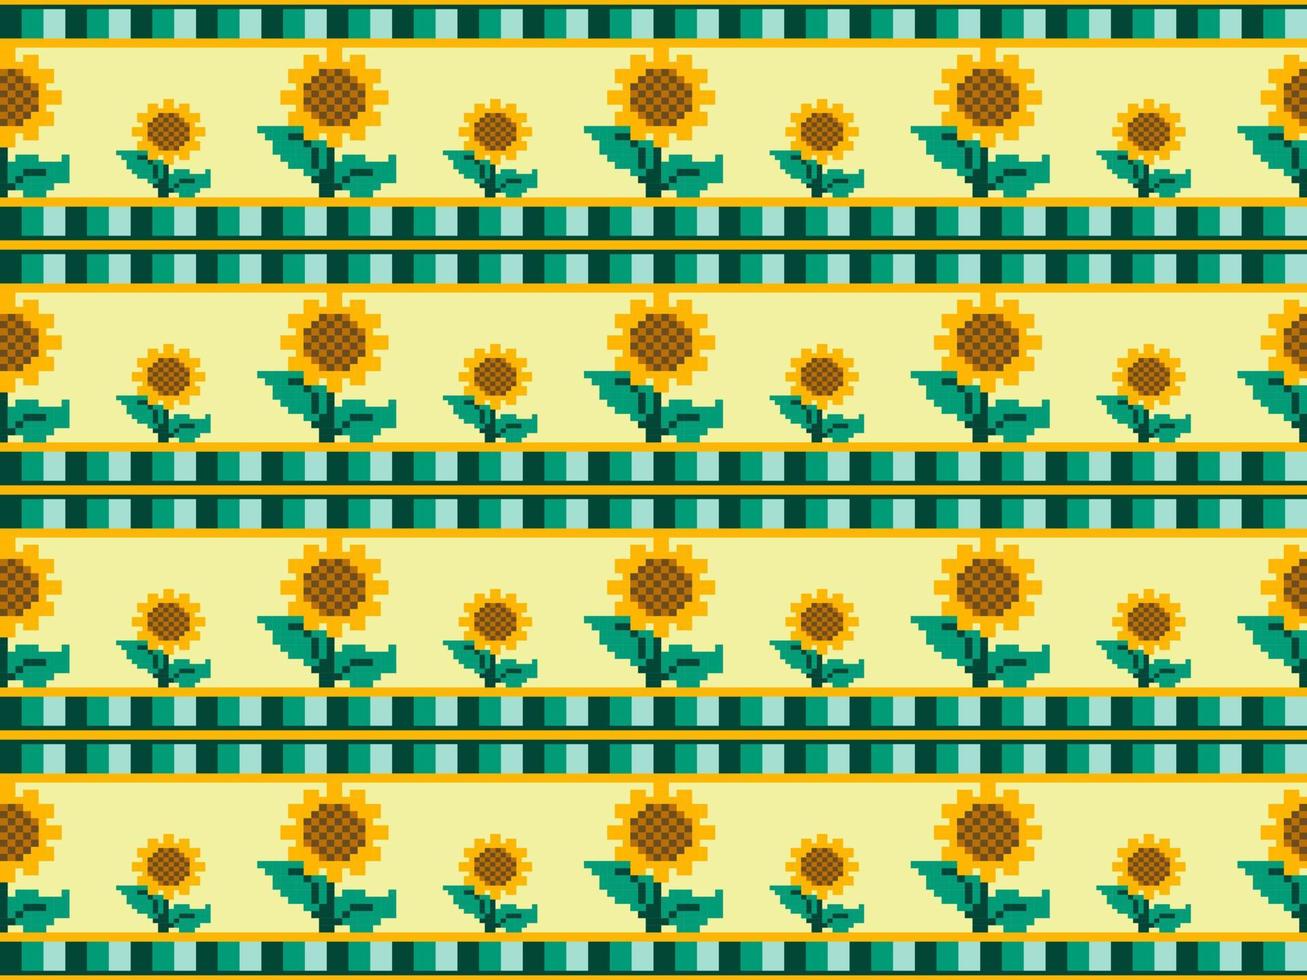 patrón de píxeles de plantas de girasol sobre fondo amarillo vector